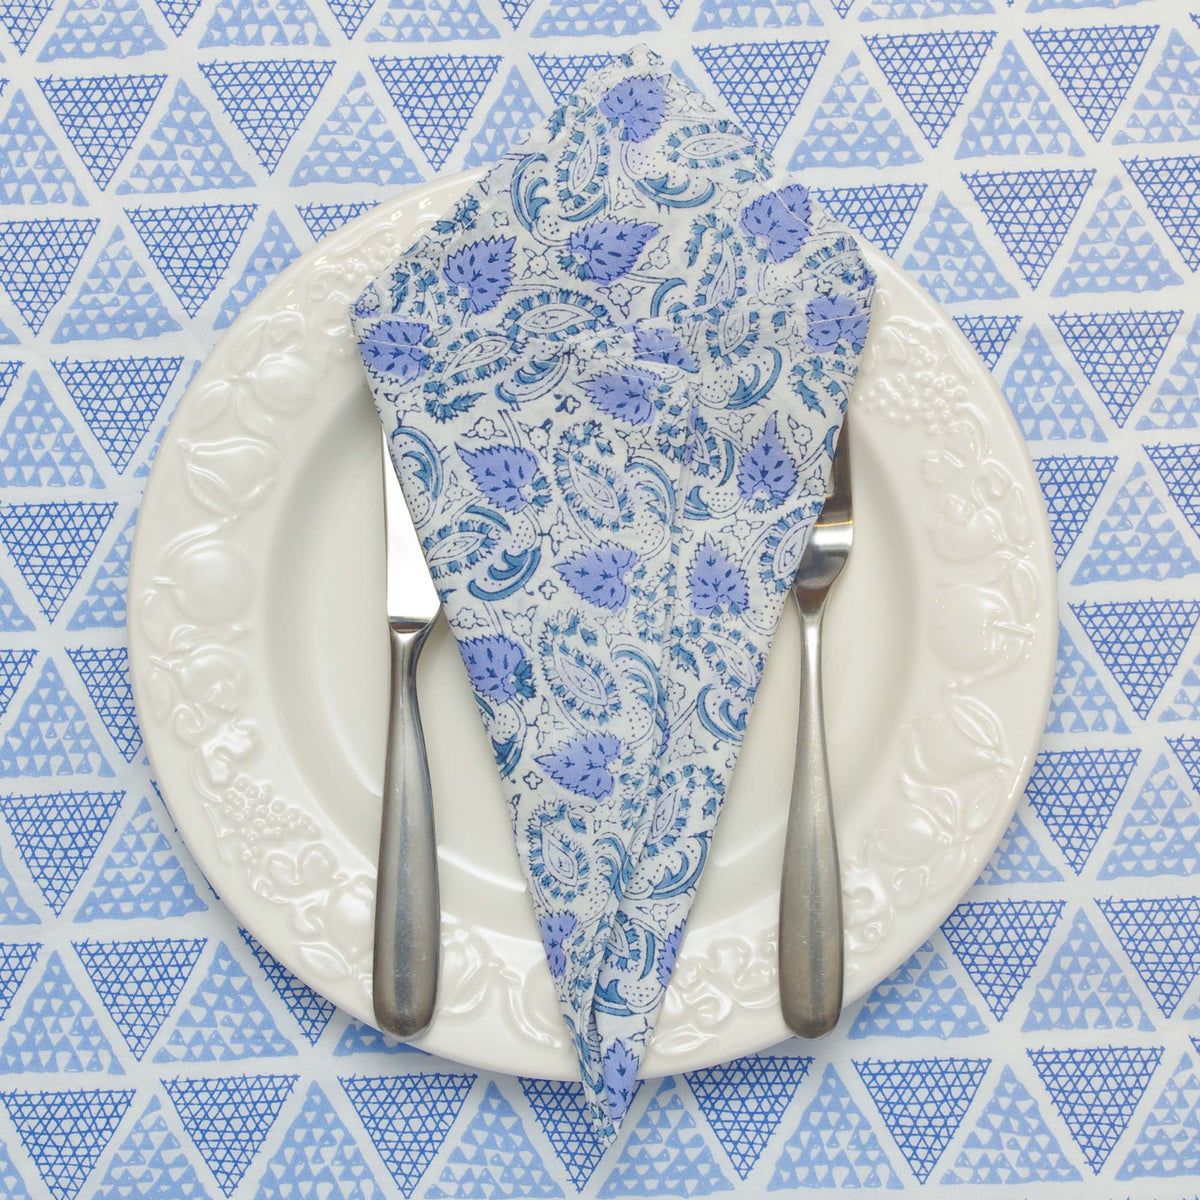 Servietten mit Blumenmuster, weiß, blau, Paisley-Muster (40,6 cm/45,7 cm/50,8 cm) – 4er-Set